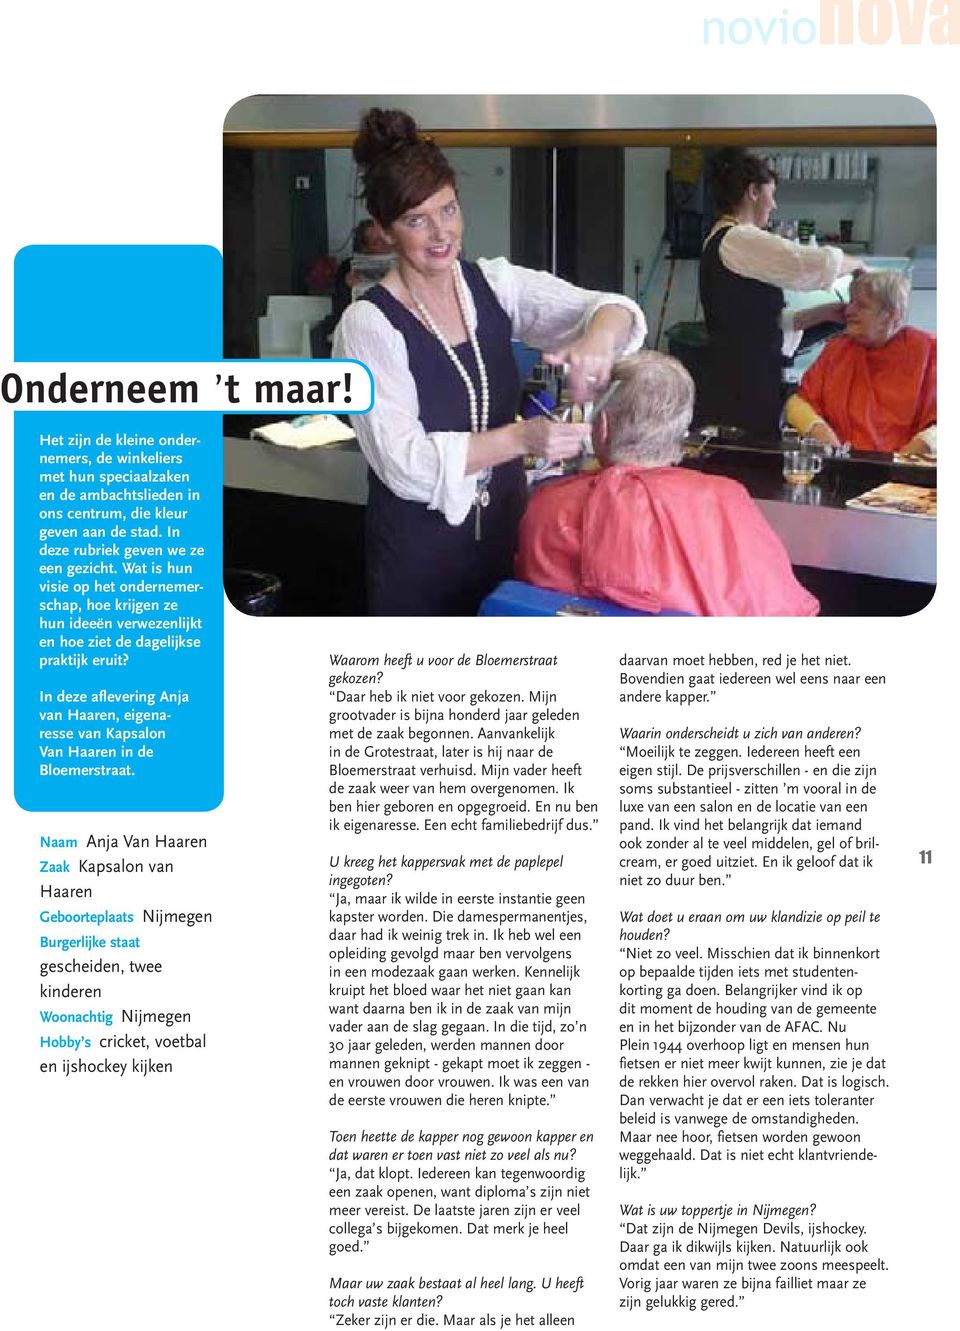 In deze aflevering Anja van Haaren, eigenaresse van Kapsalon Van Haaren in de Bloemerstraat.